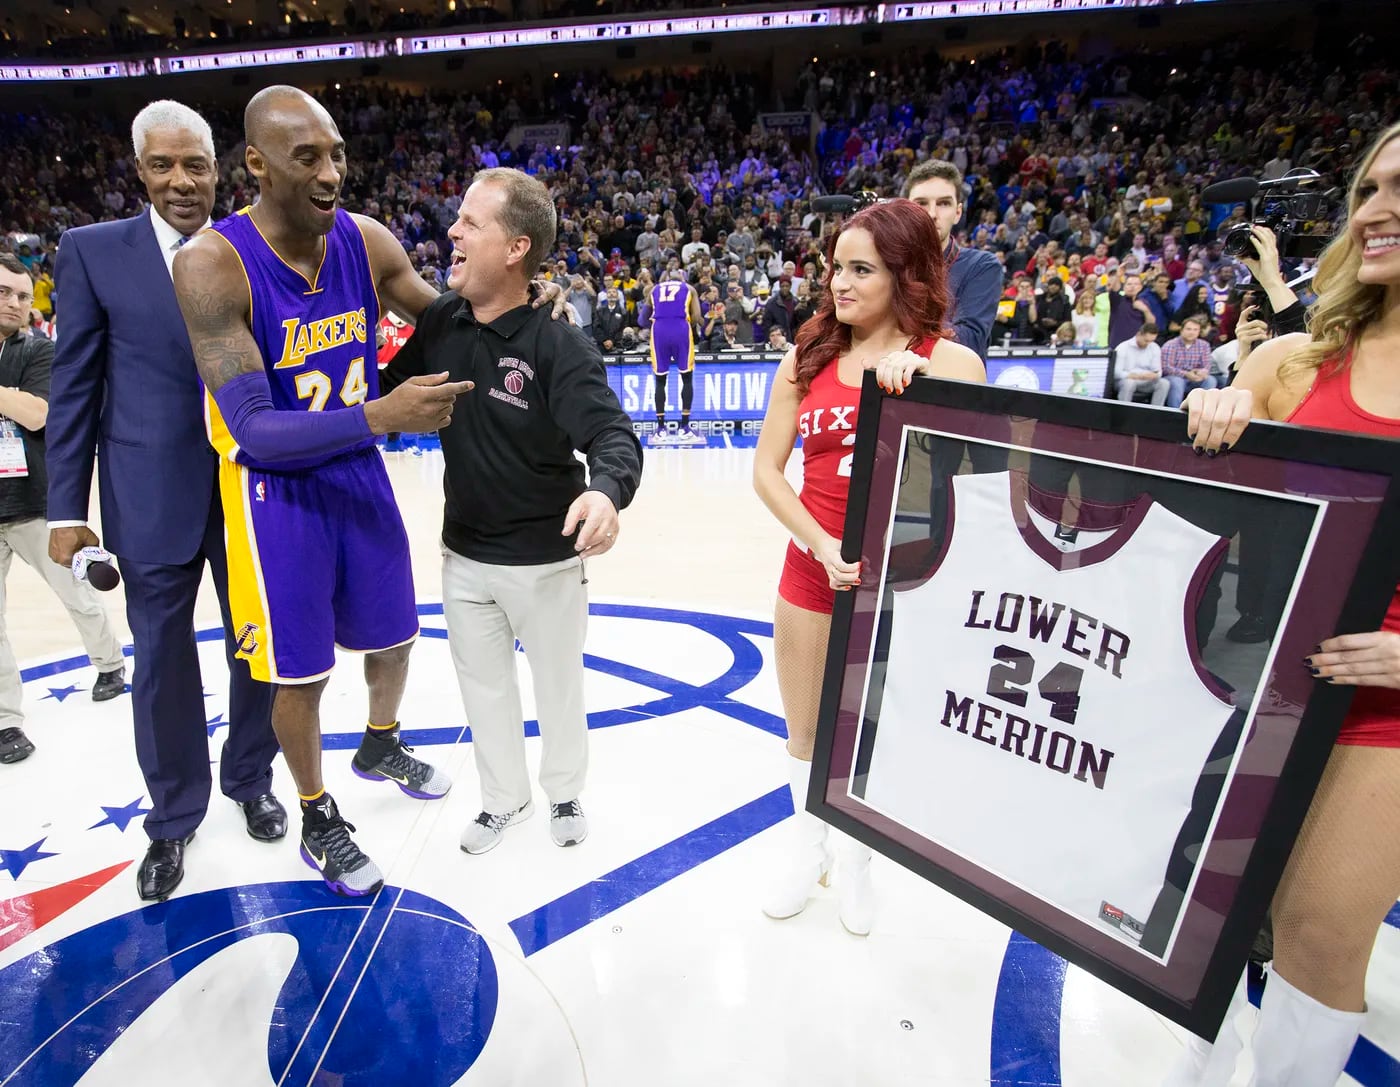 Los Angeles Lakers guard Kobe Bryant (C) hangs in the air between